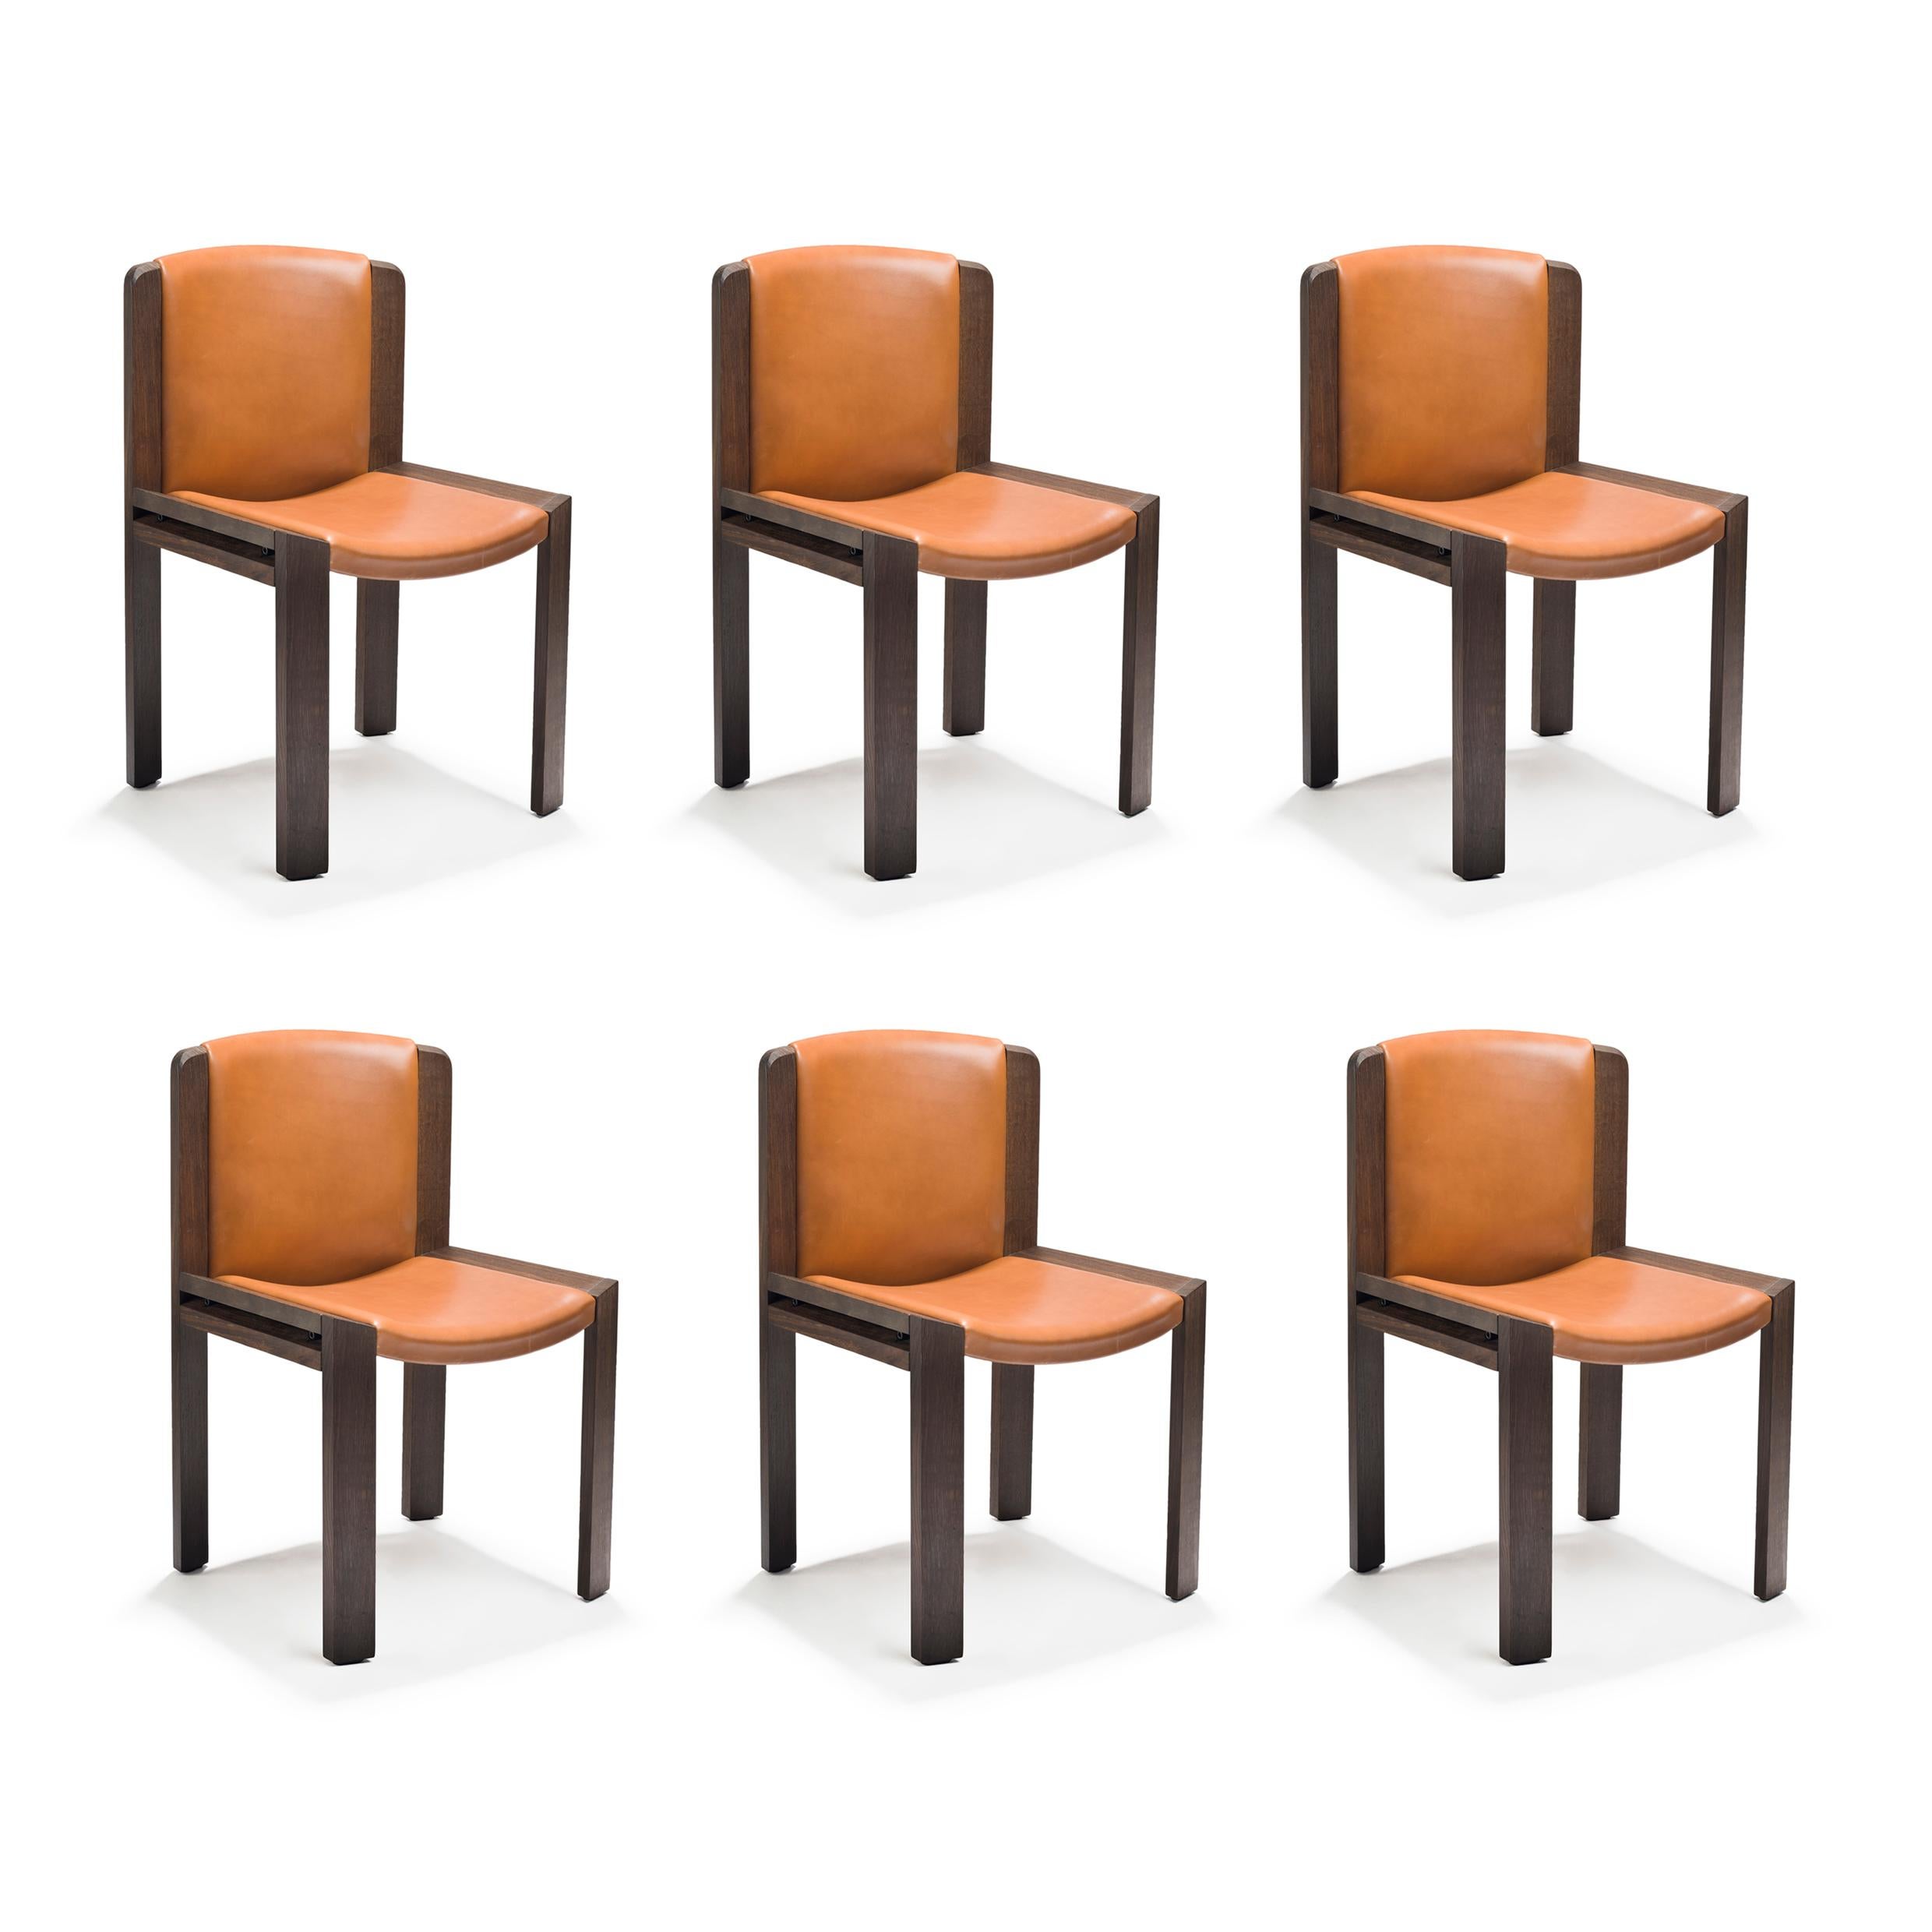 Stuhl, entworfen von Joe Colombo im Jahr 1965.

Der von dem zukunftsorientierten italienischen Designer Joe Colombo entworfene Stuhl 300 ist ein wunderschönes Beispiel für sein funktionales Designverständnis. Sitz und Rückenlehne sind gepolstert und